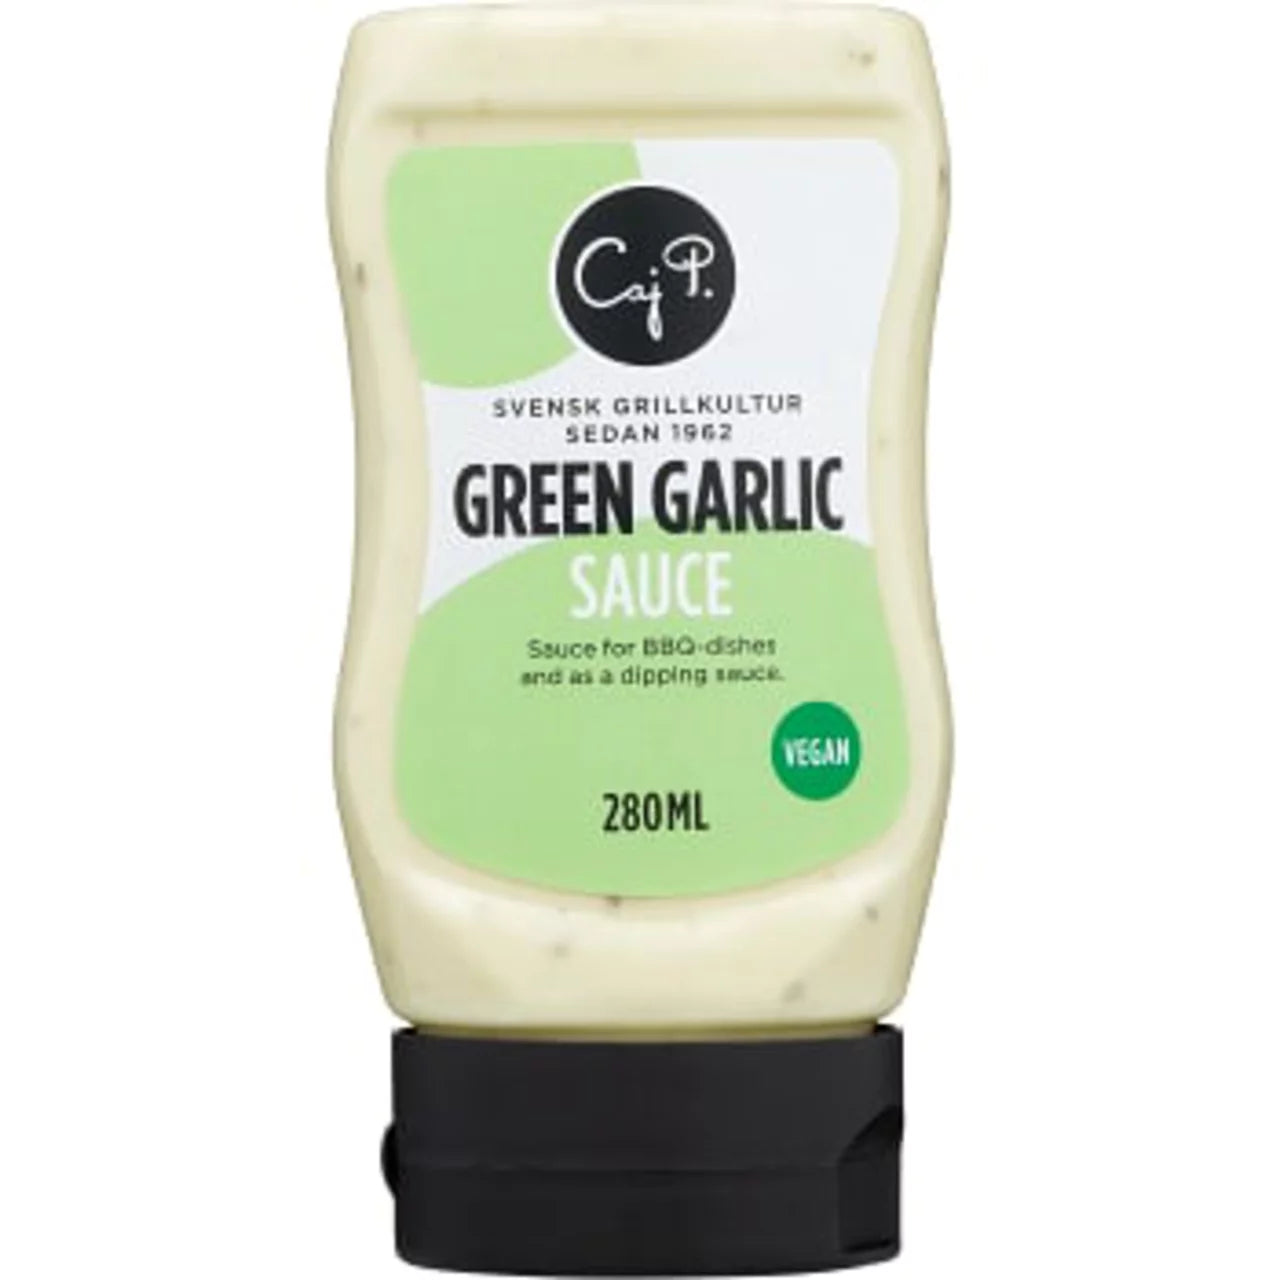 Swedish Green Garlic - Green Garlic Sauce Caj P 280ml